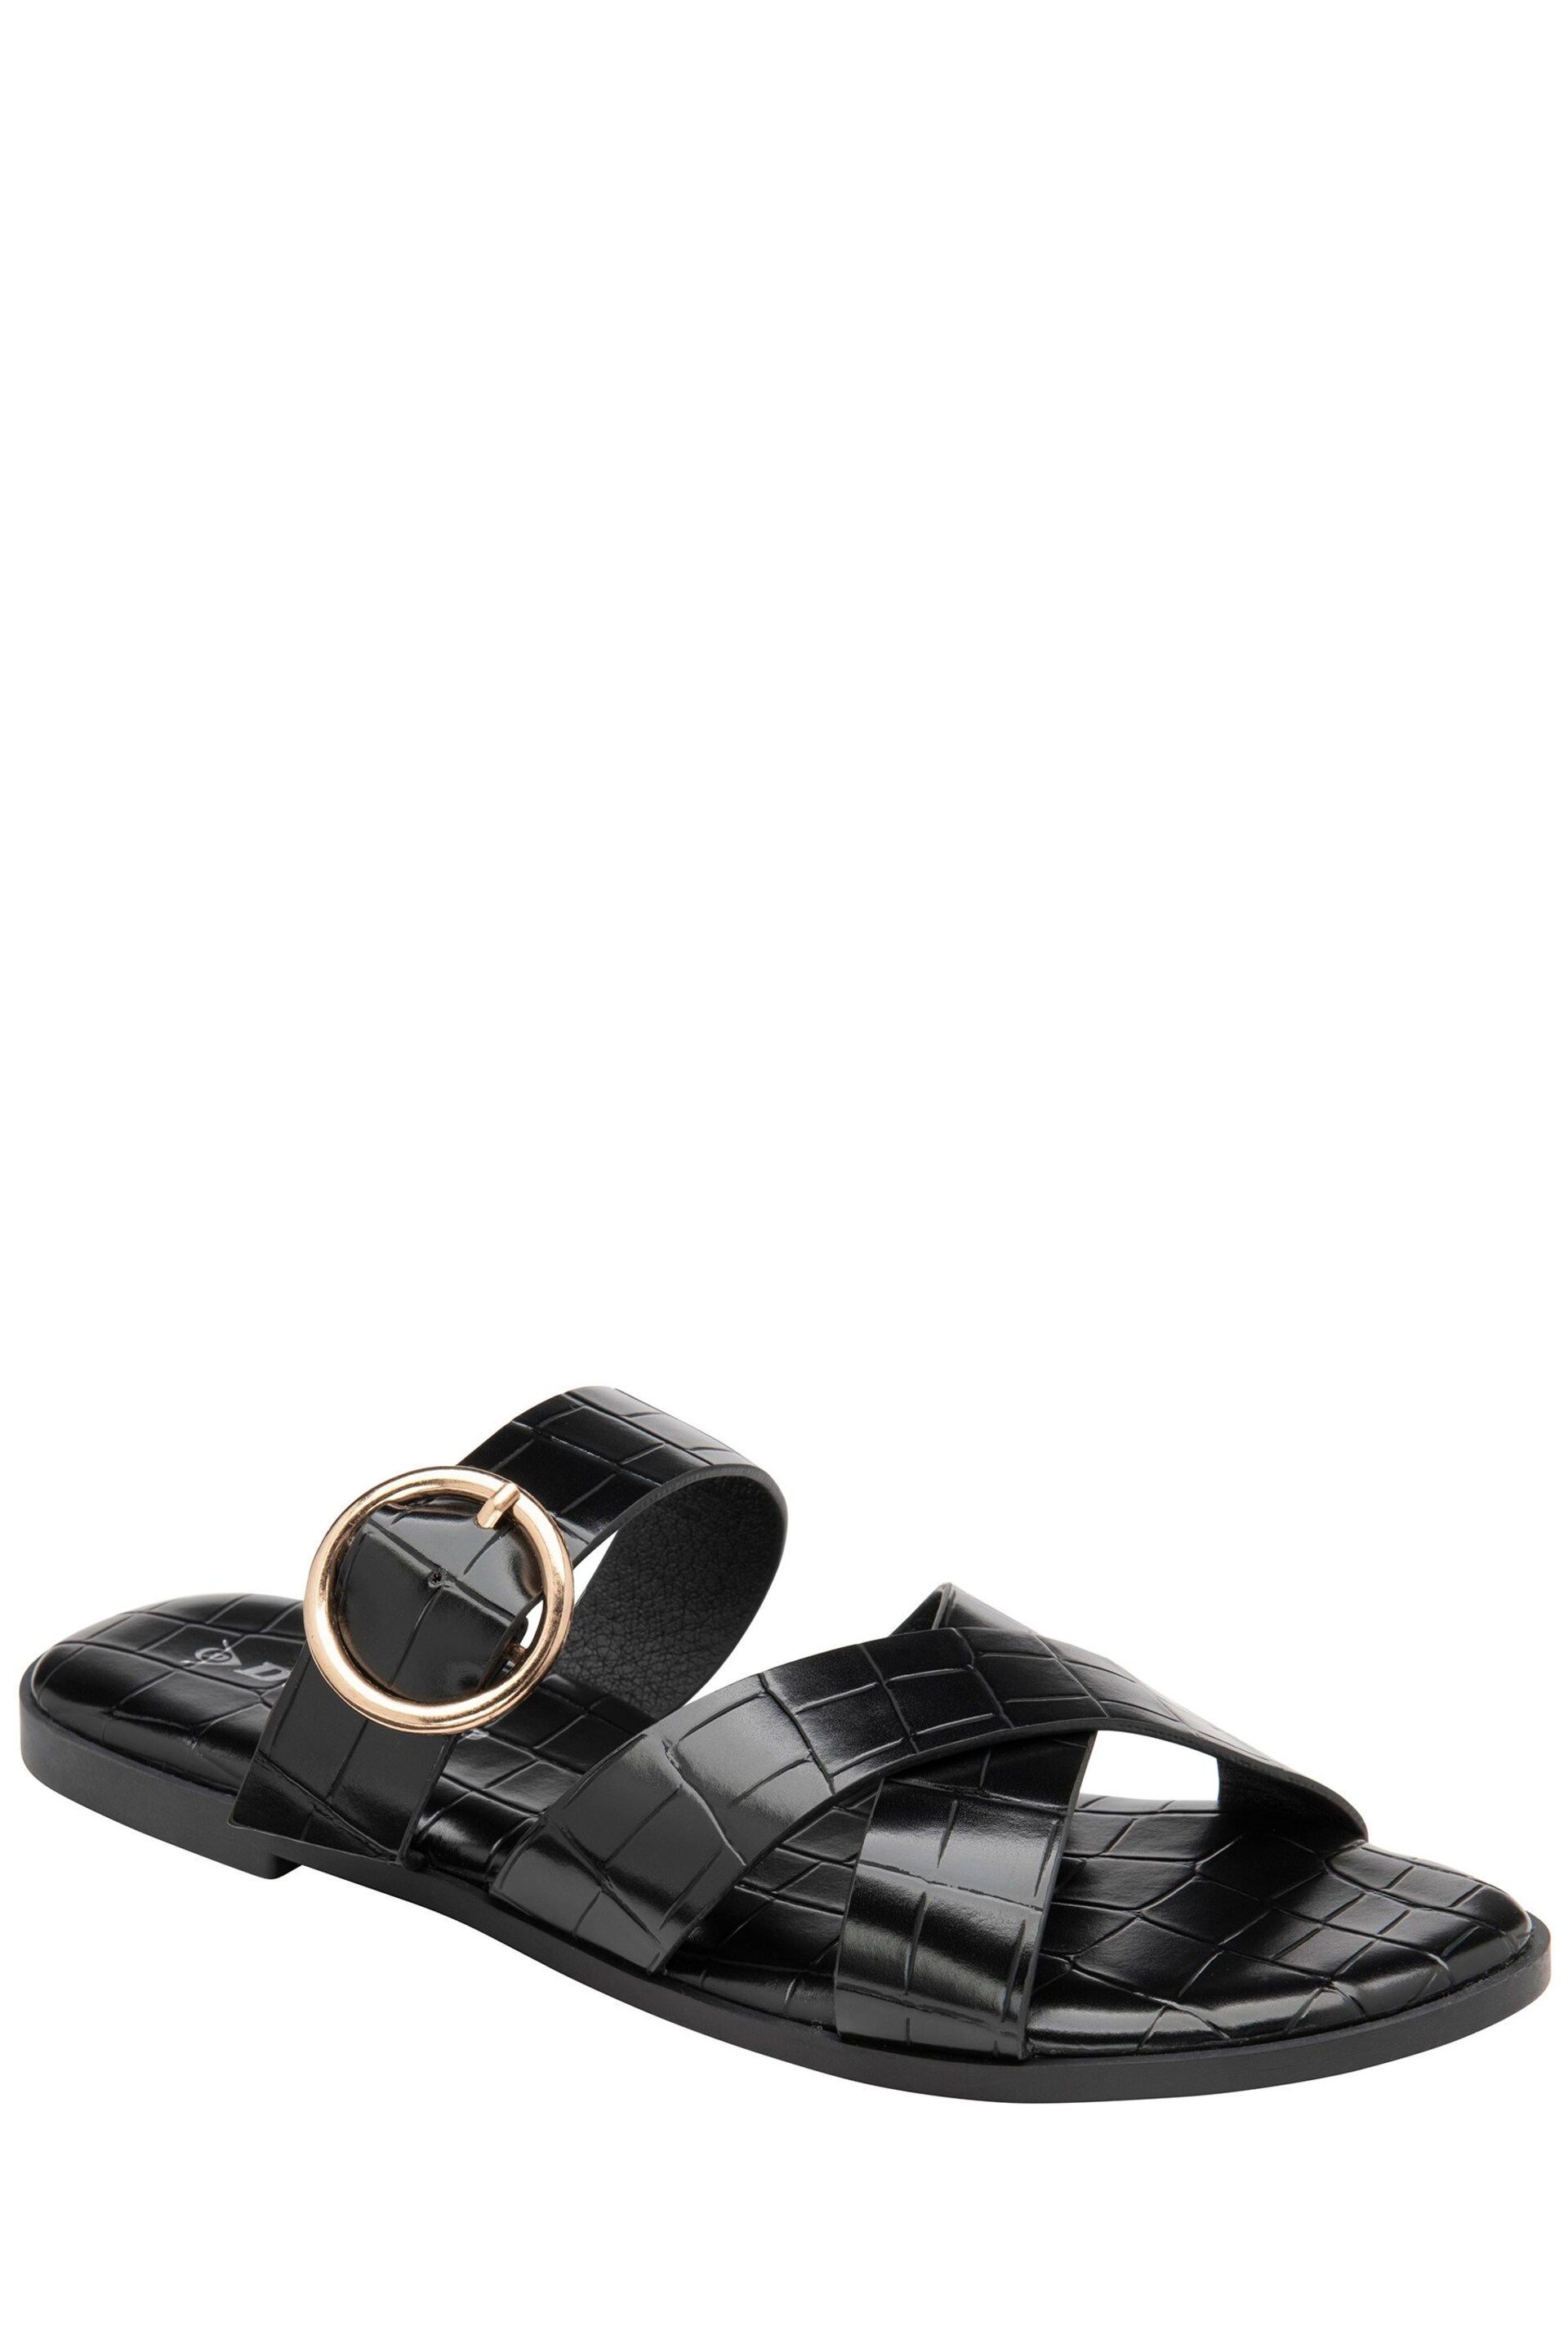 Dunlop Black Open-Toe Sandals - Image 1 of 4